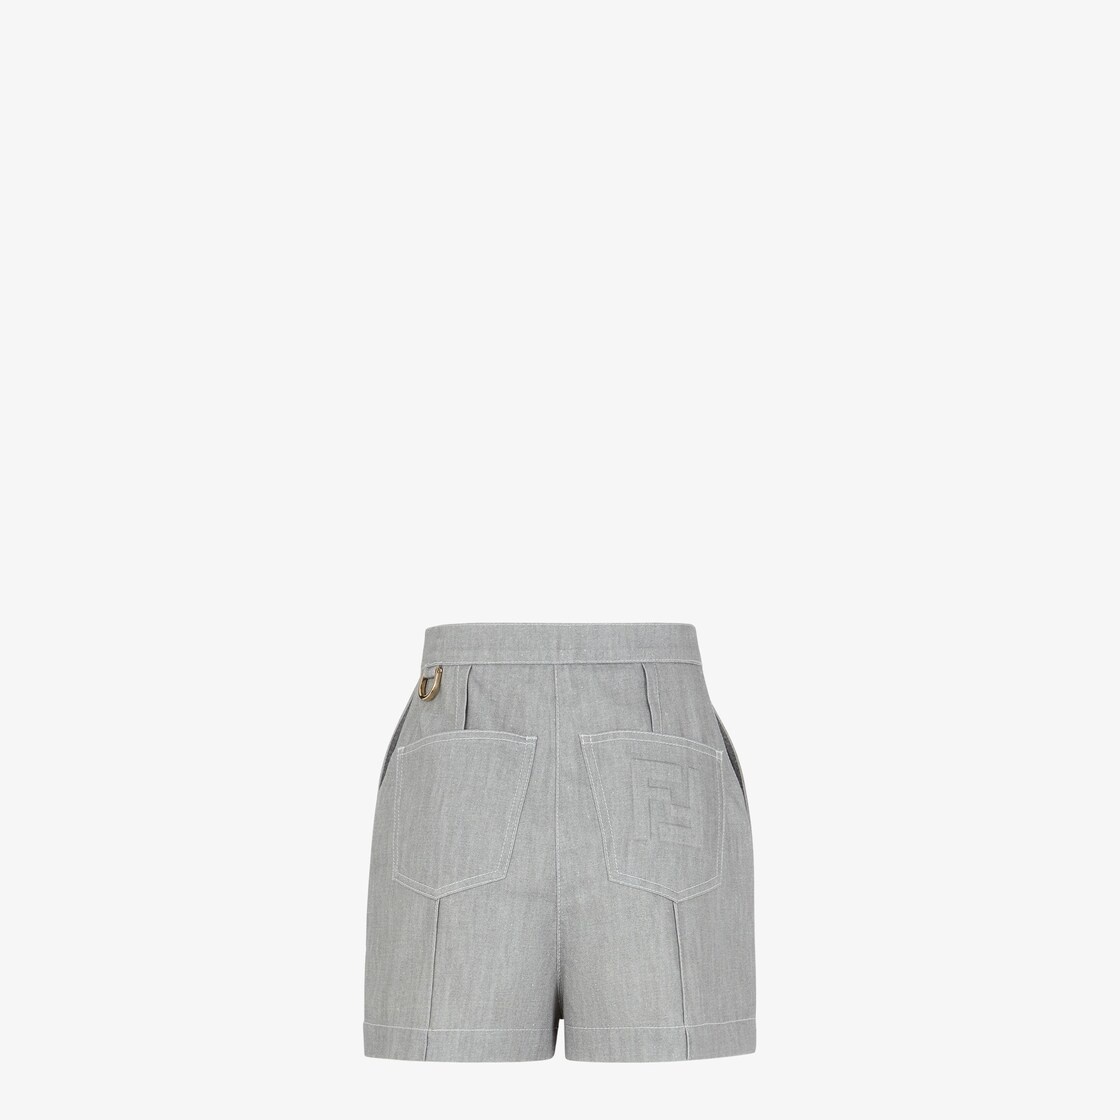 Gray chambray shorts - 2